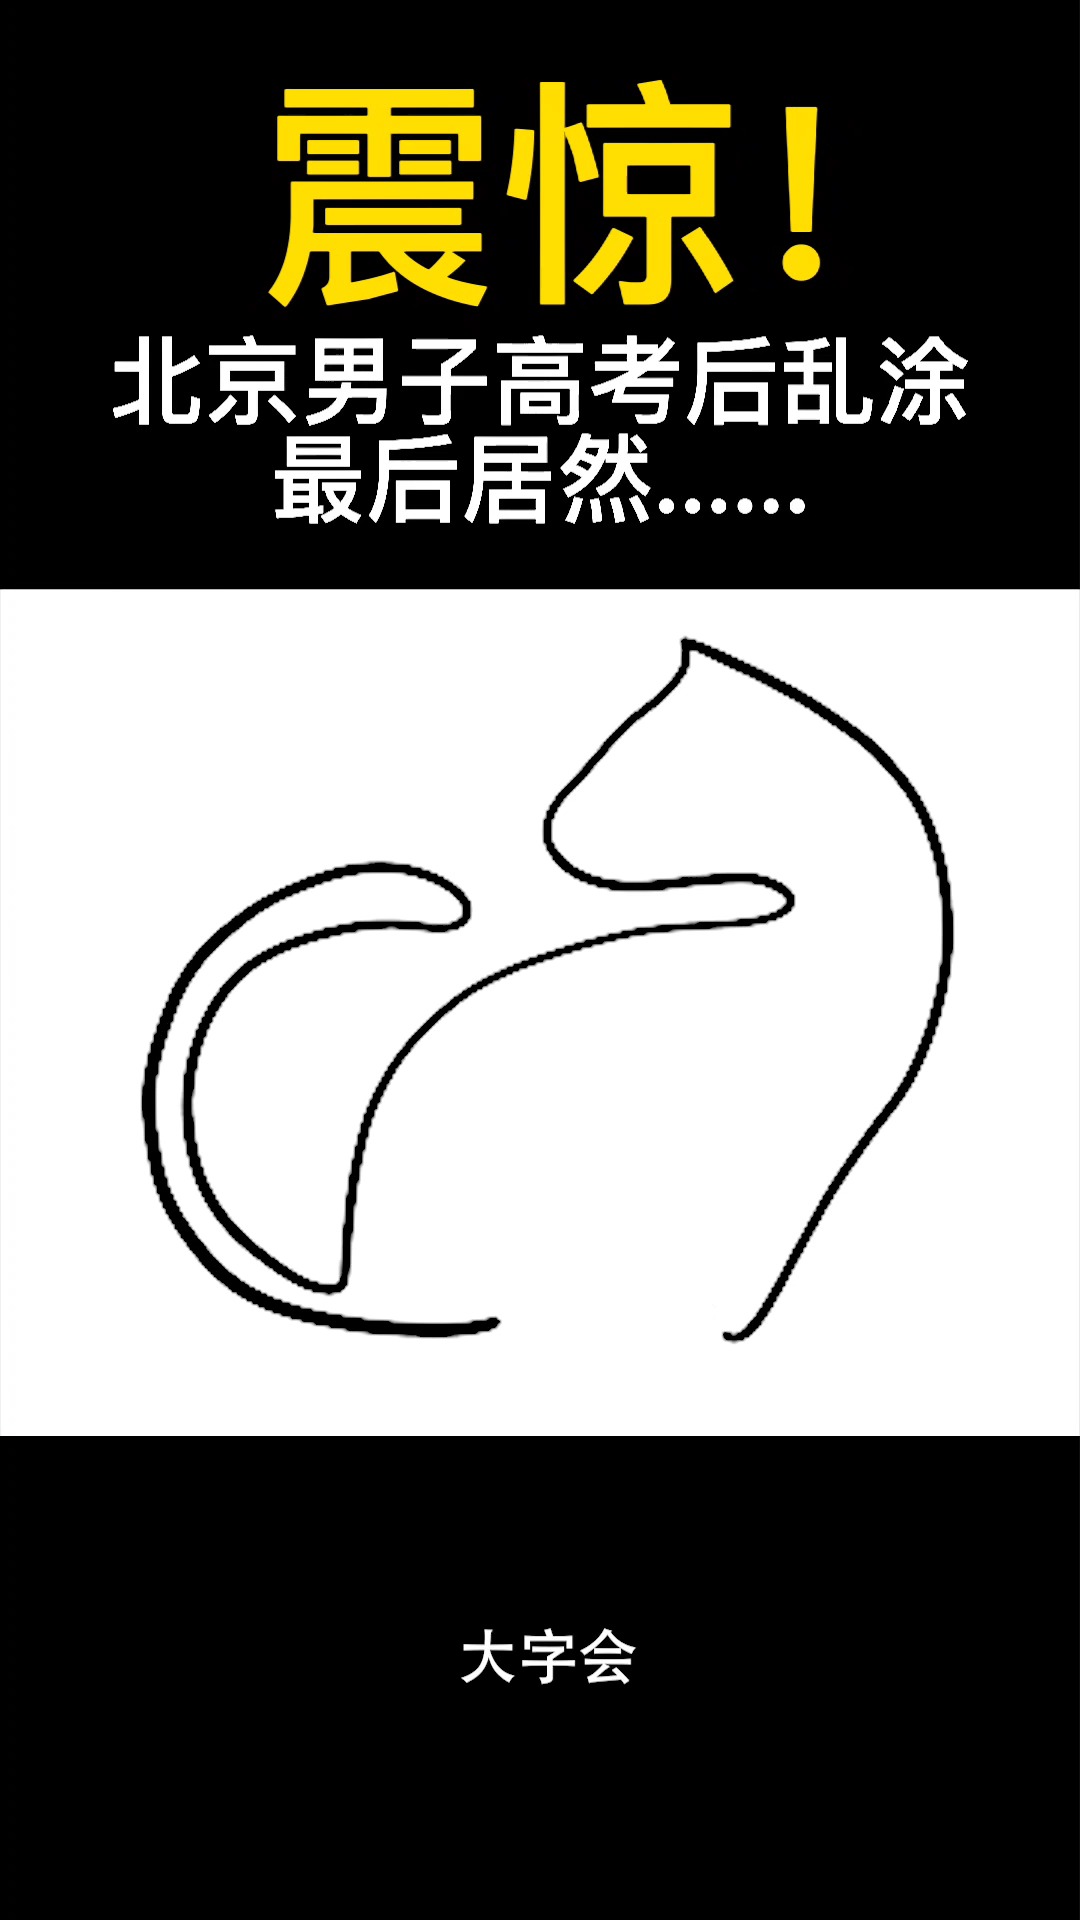 北京男子脑洞大爆炸，随手乱画出现小猫和老鼠创意 #logo设计 #包装设计 #品牌设计 频